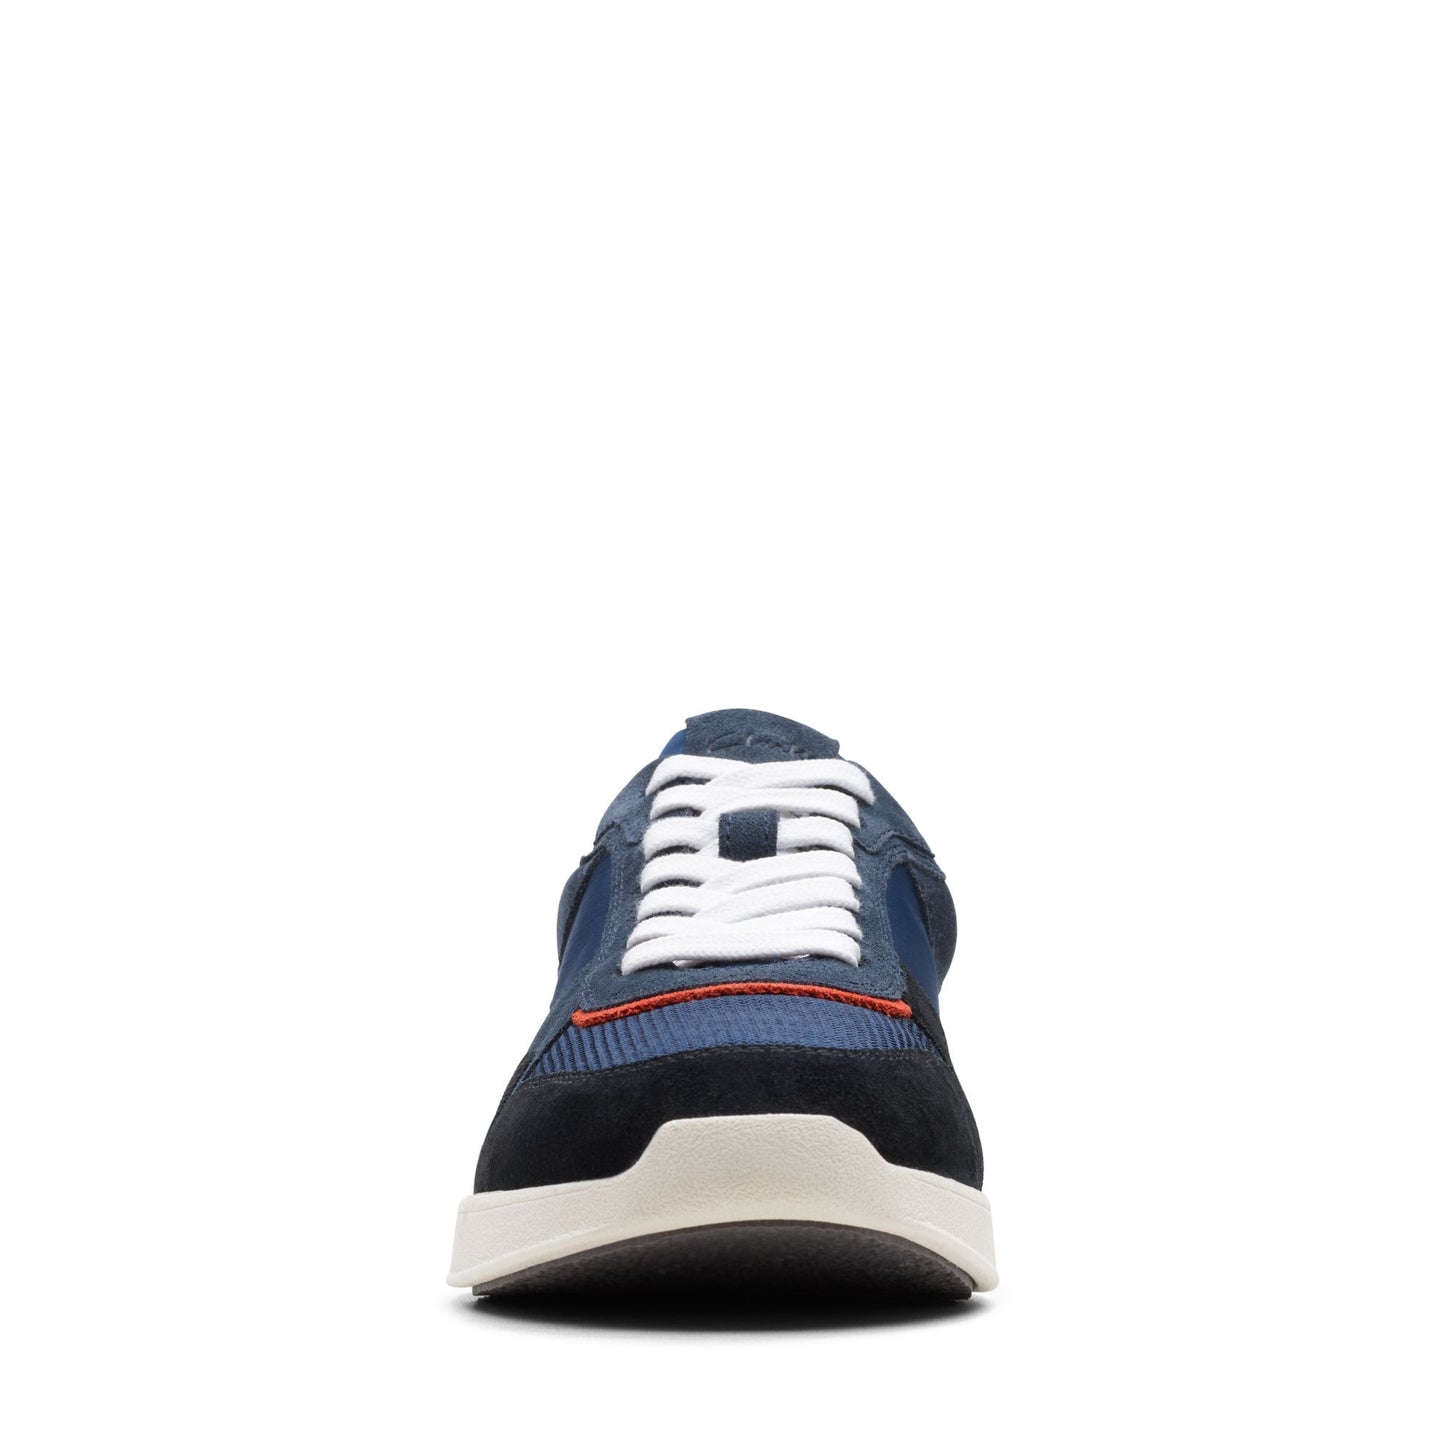 Sneakers De La Marca Clarks Para Hombre Modelo Racelite Tor NavyEn Color Azul